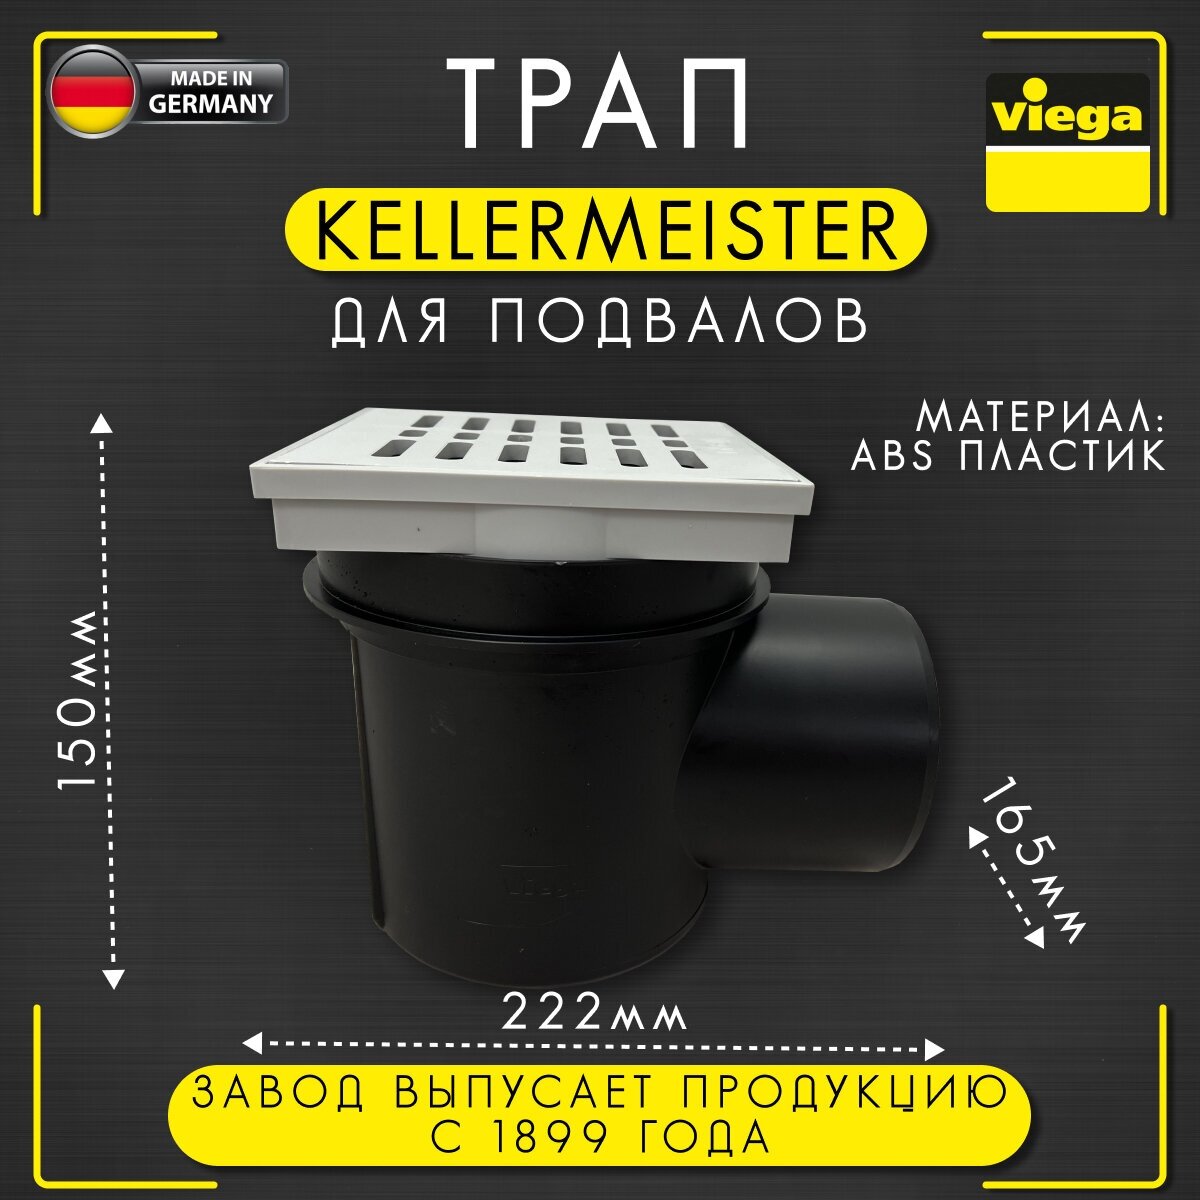 Трап для подвалов Kellermeister, сетчатый фильтр, защита от запаха, горизонтальный отвод, VIEGA 4956, арт. 106003, 100 мм